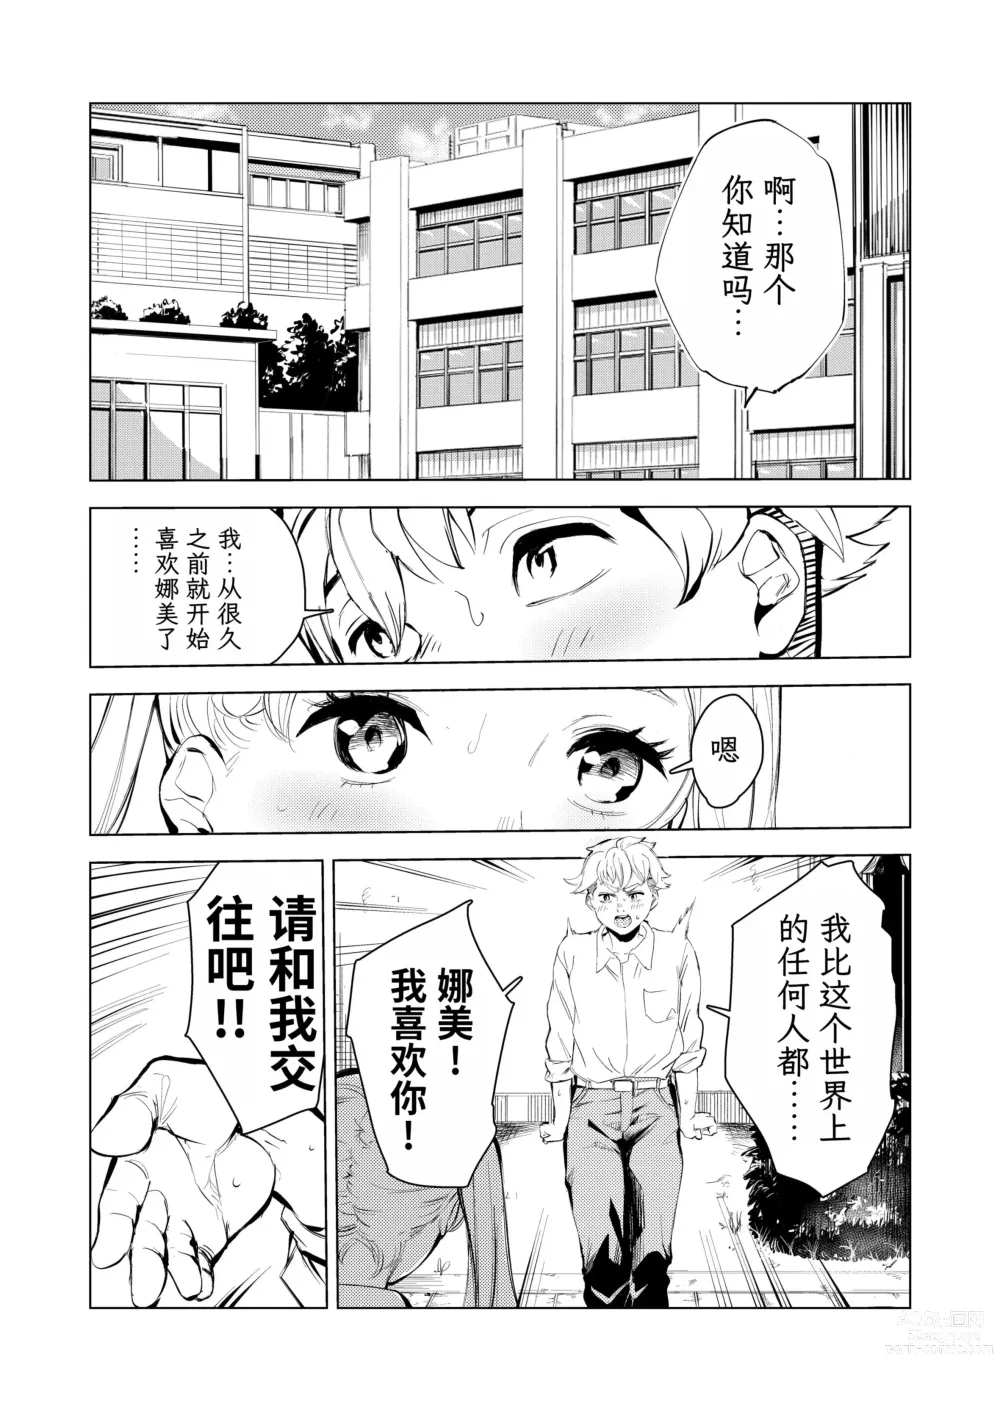 Page 3 of doujinshi 40-sai no Mahoutsukai 3